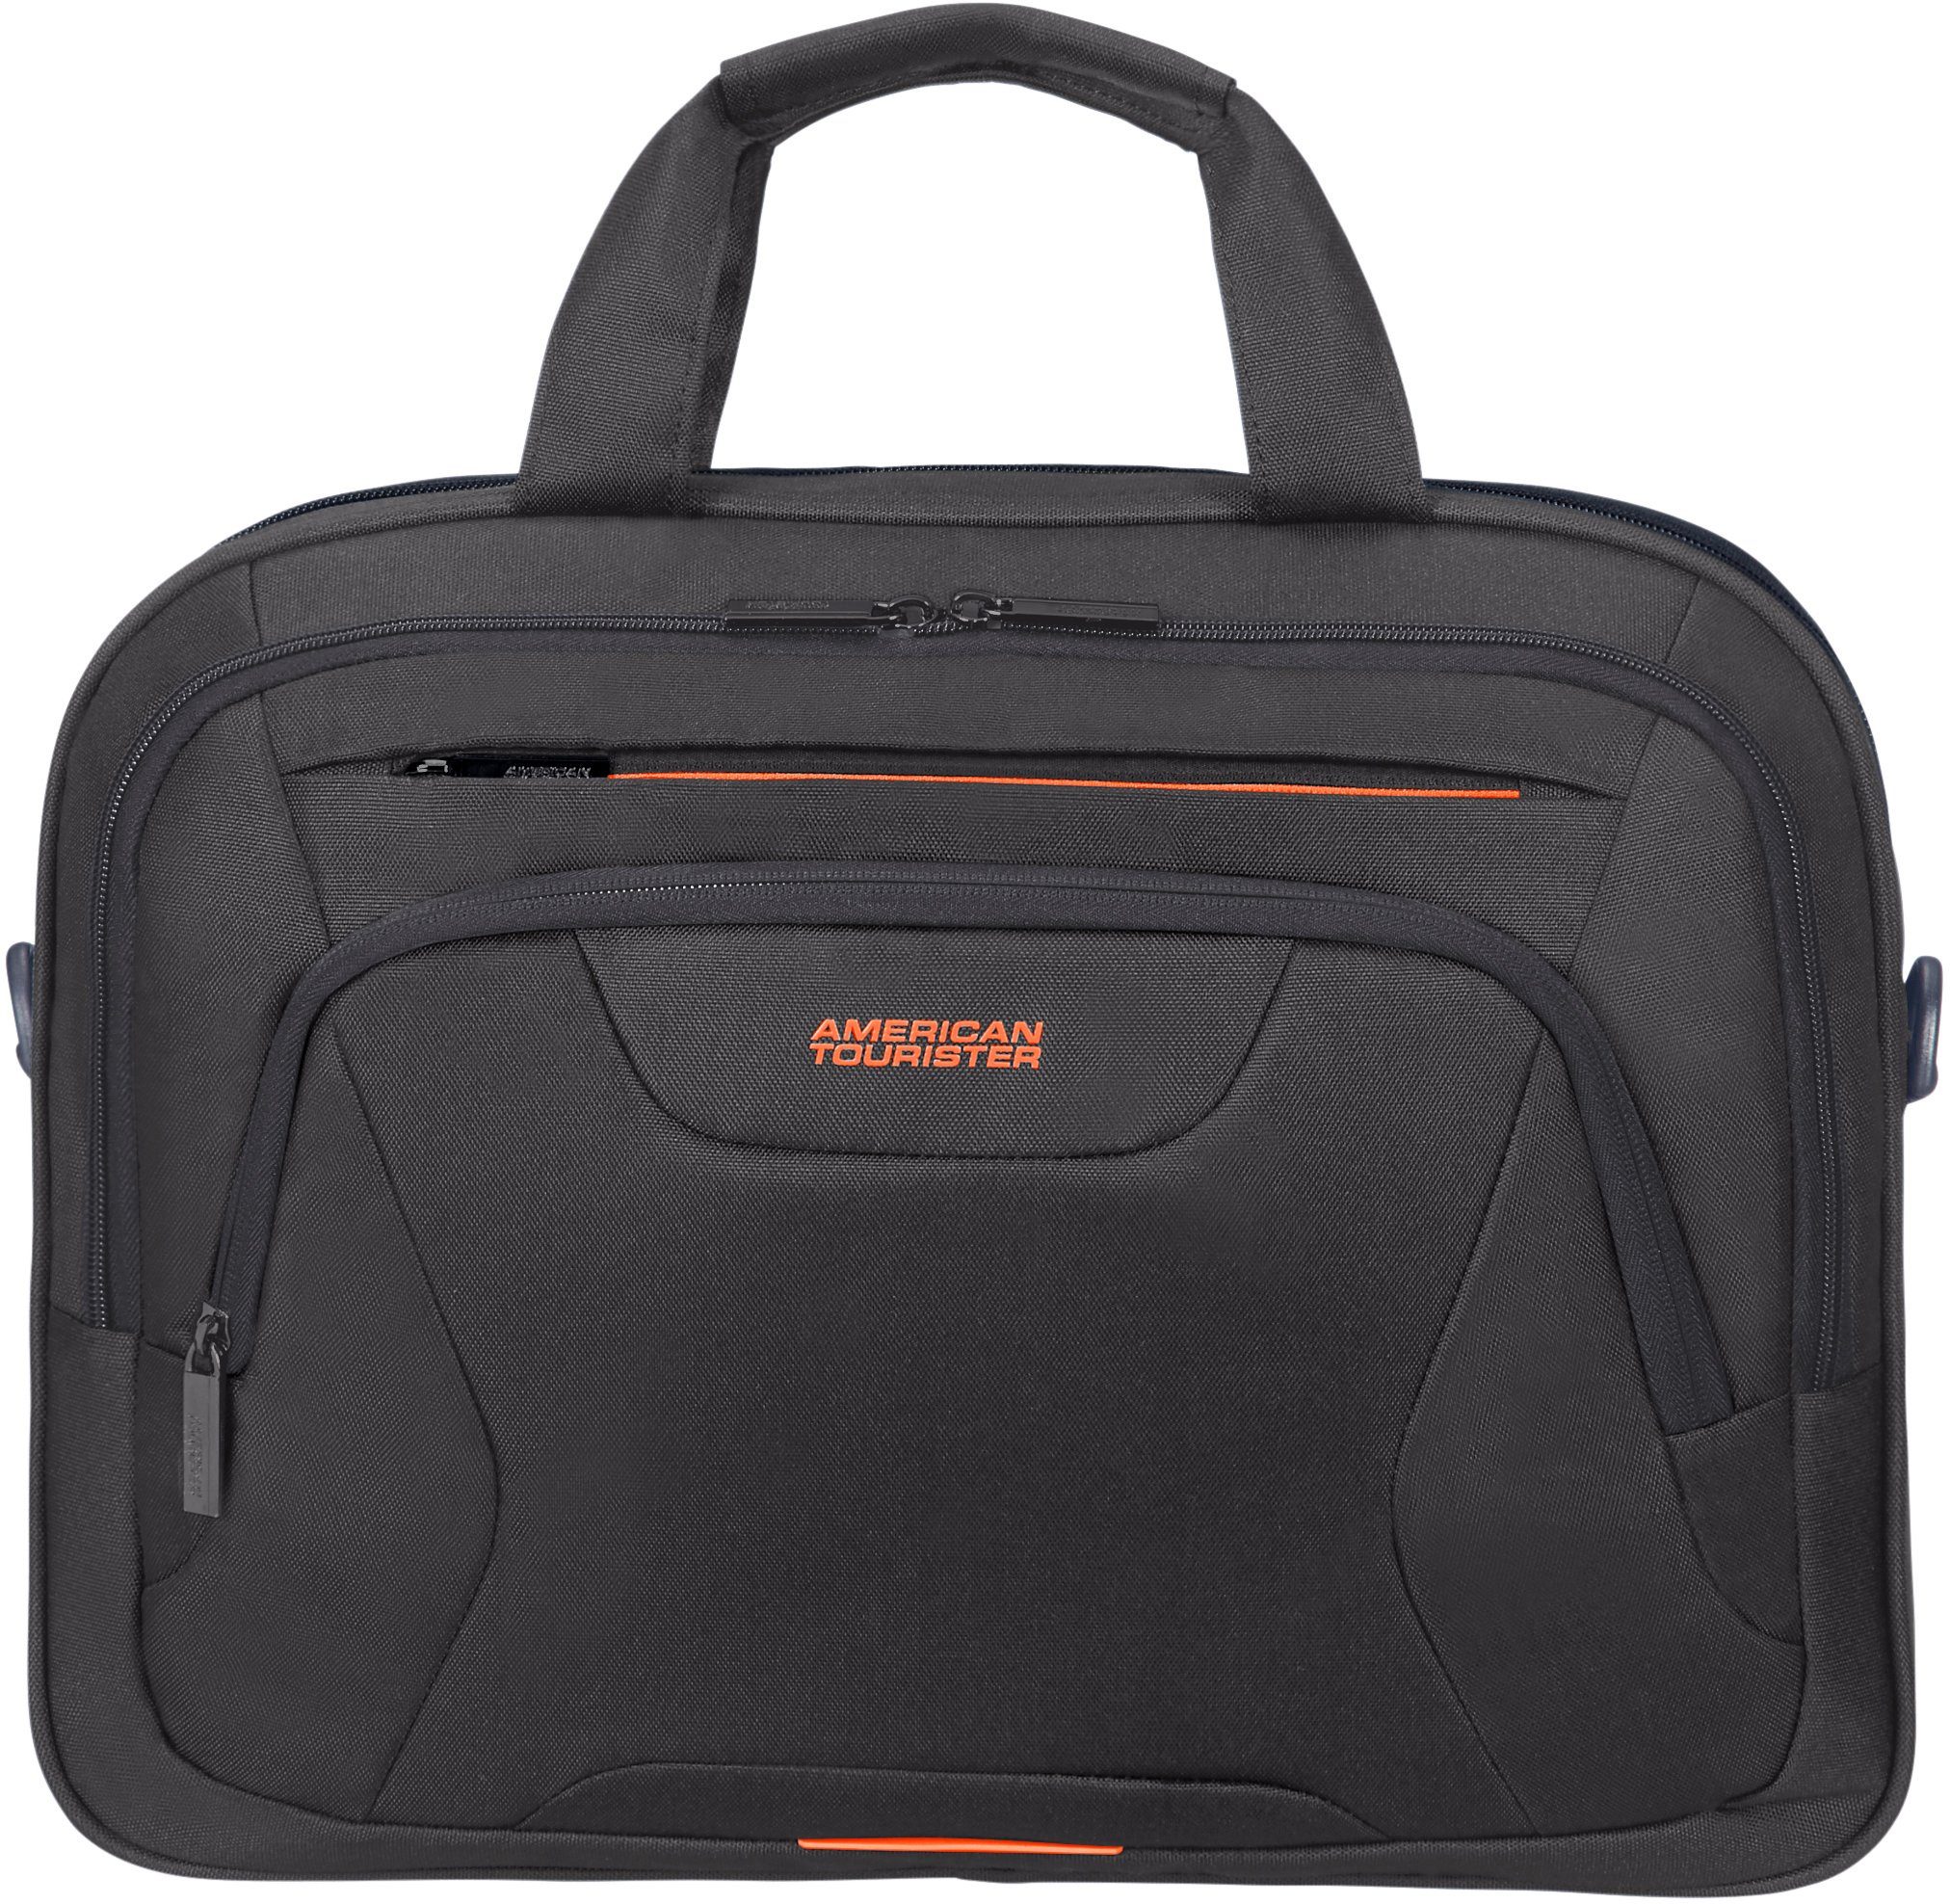 und 15,6-Zoll American Tourister® 10,5-Zoll Laptopfach black/orange mit Laptoptasche At Tabletfach Work,